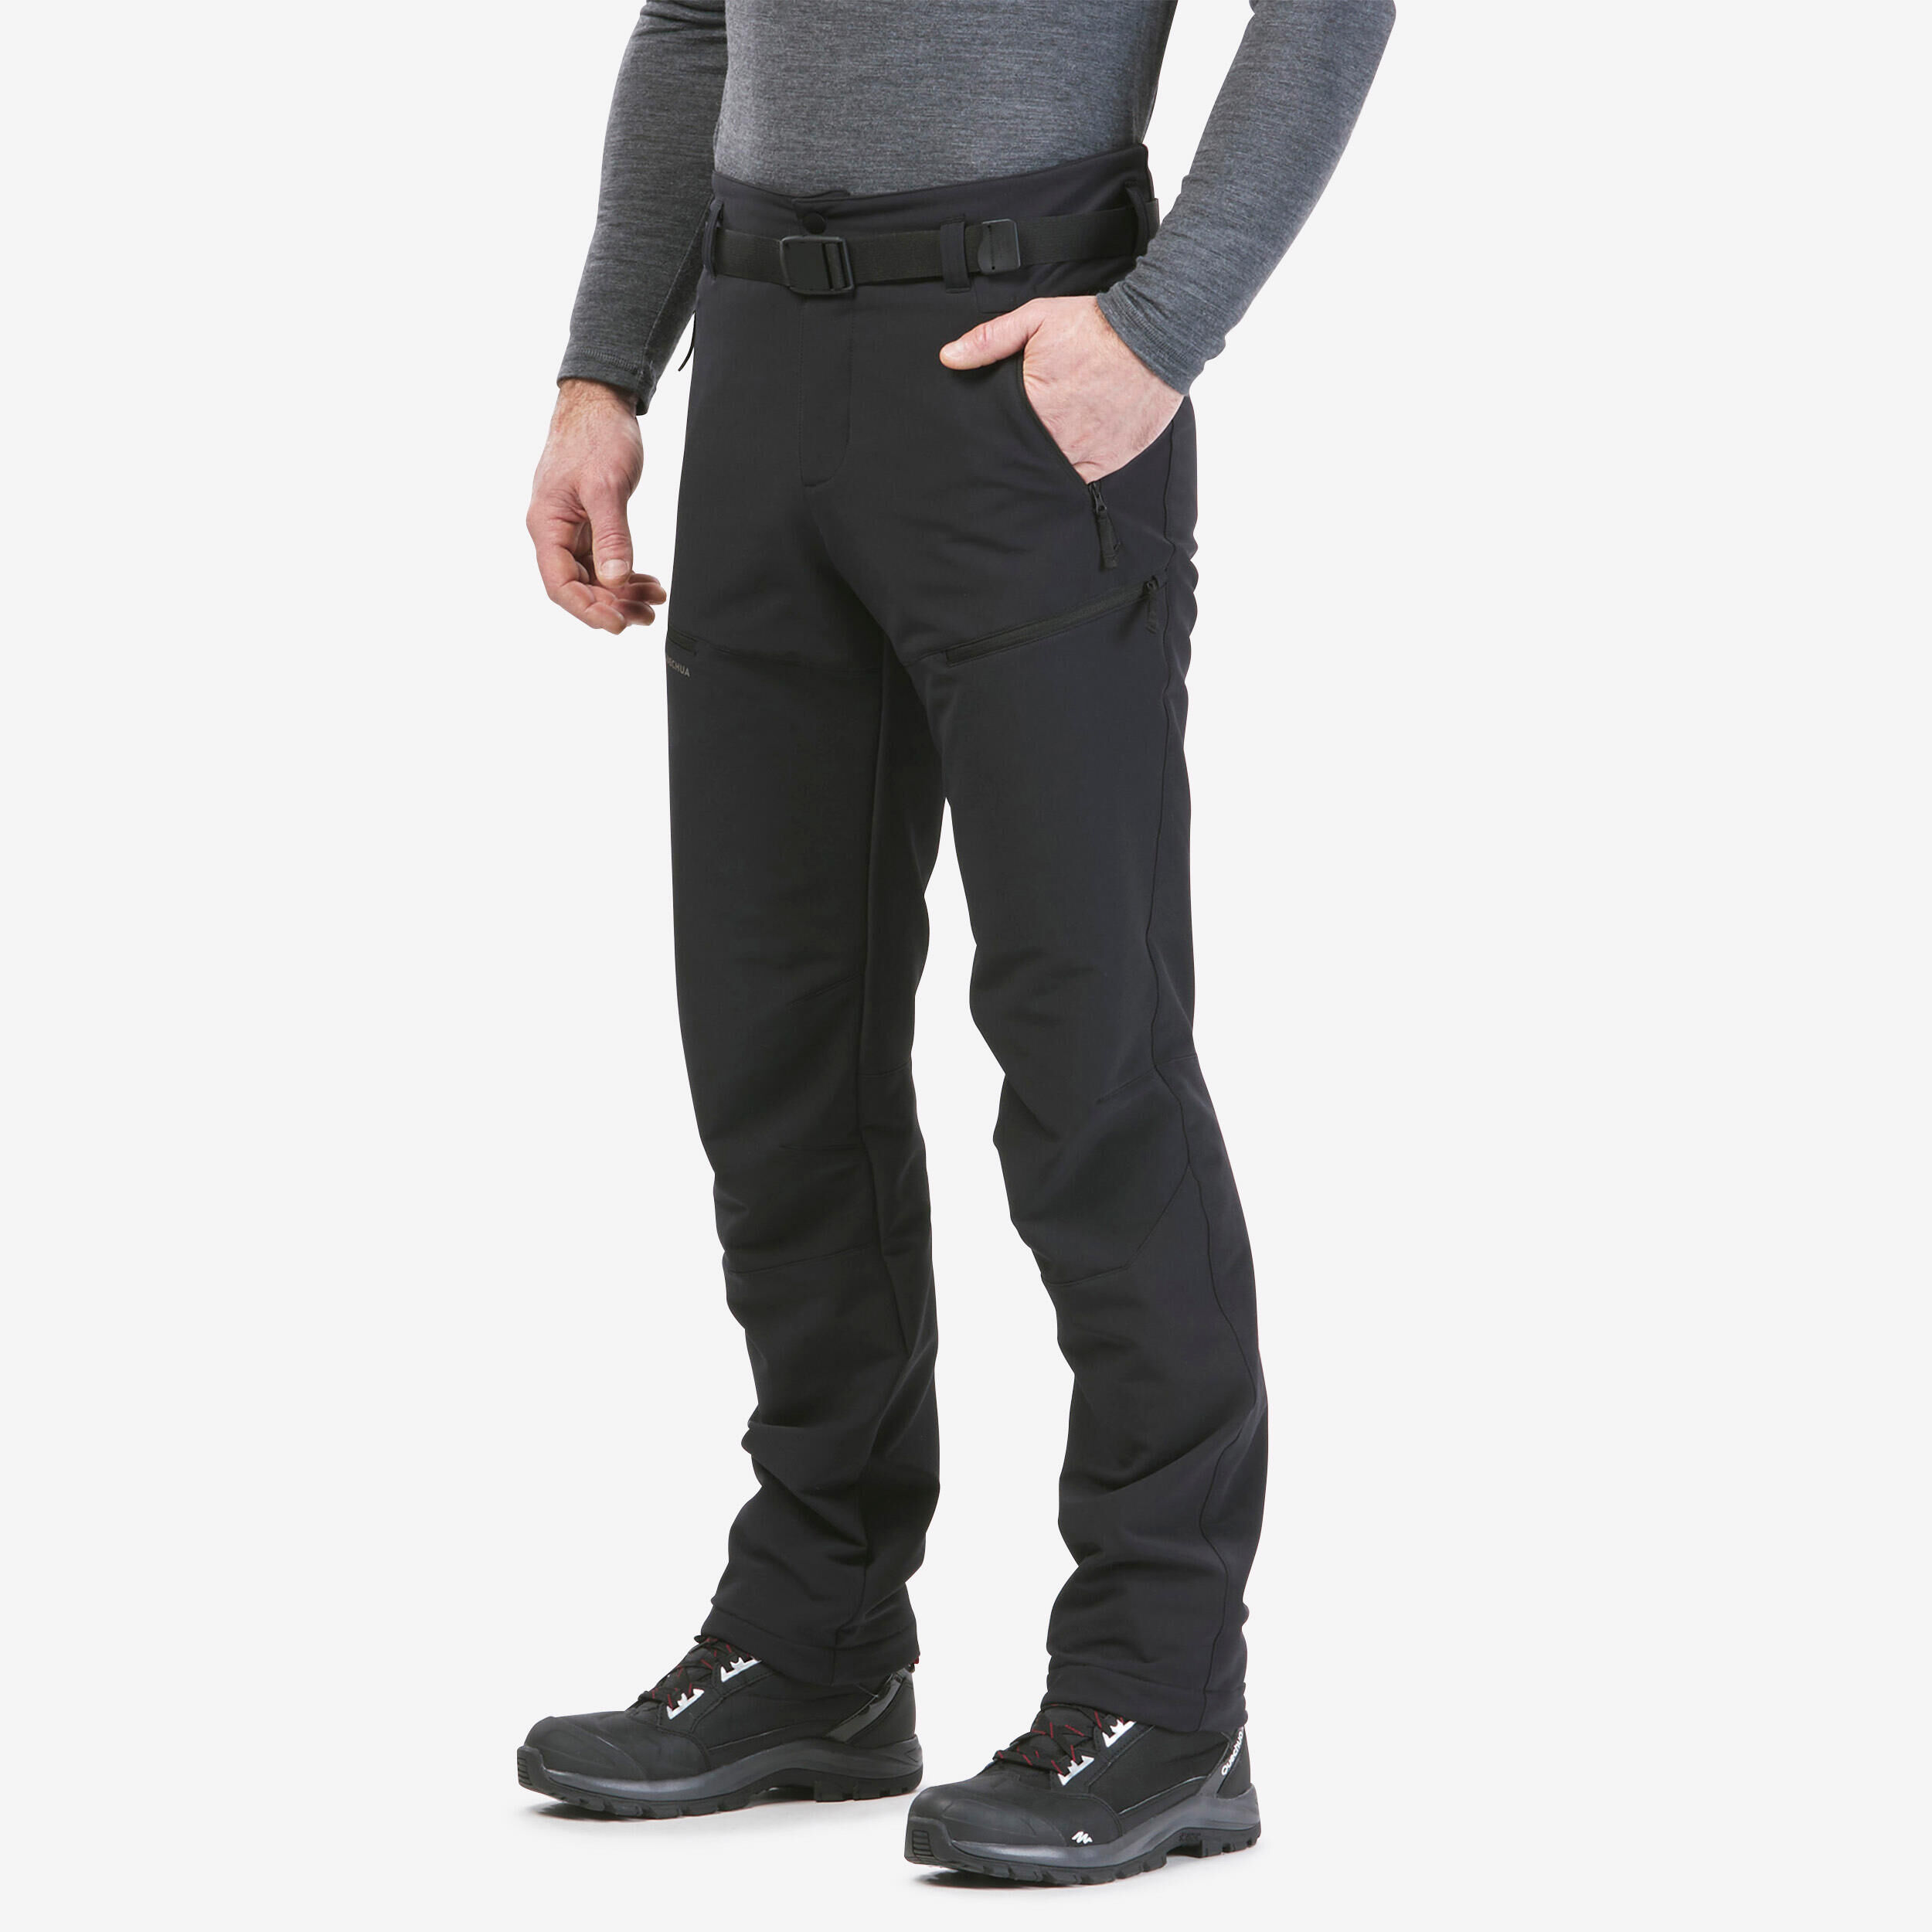 Thermal Skinny Outdoor Pants - Black